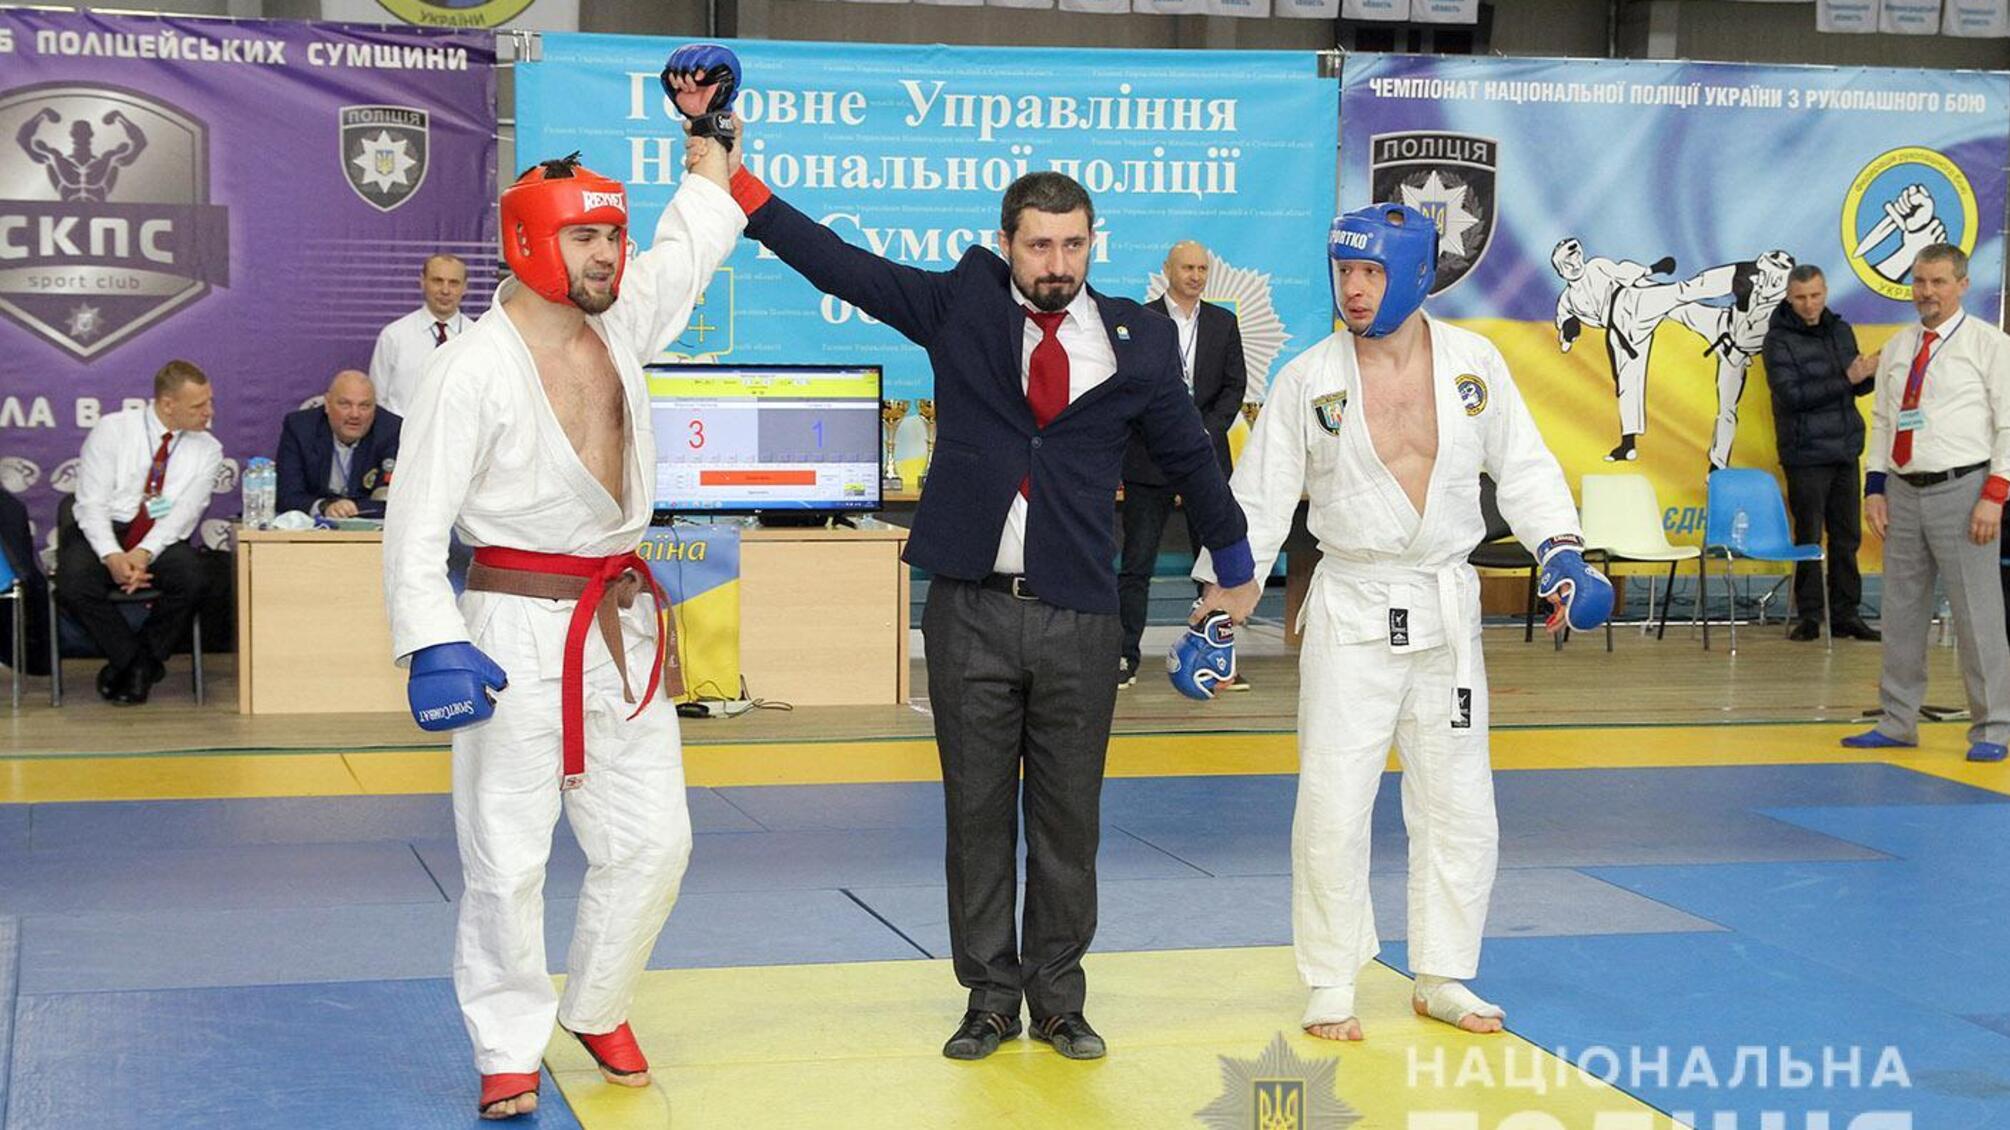 Хмельницький спецпризначенець Олександр Мирончук став переможцем Чемпіонату Національної поліції України з рукопашного бою